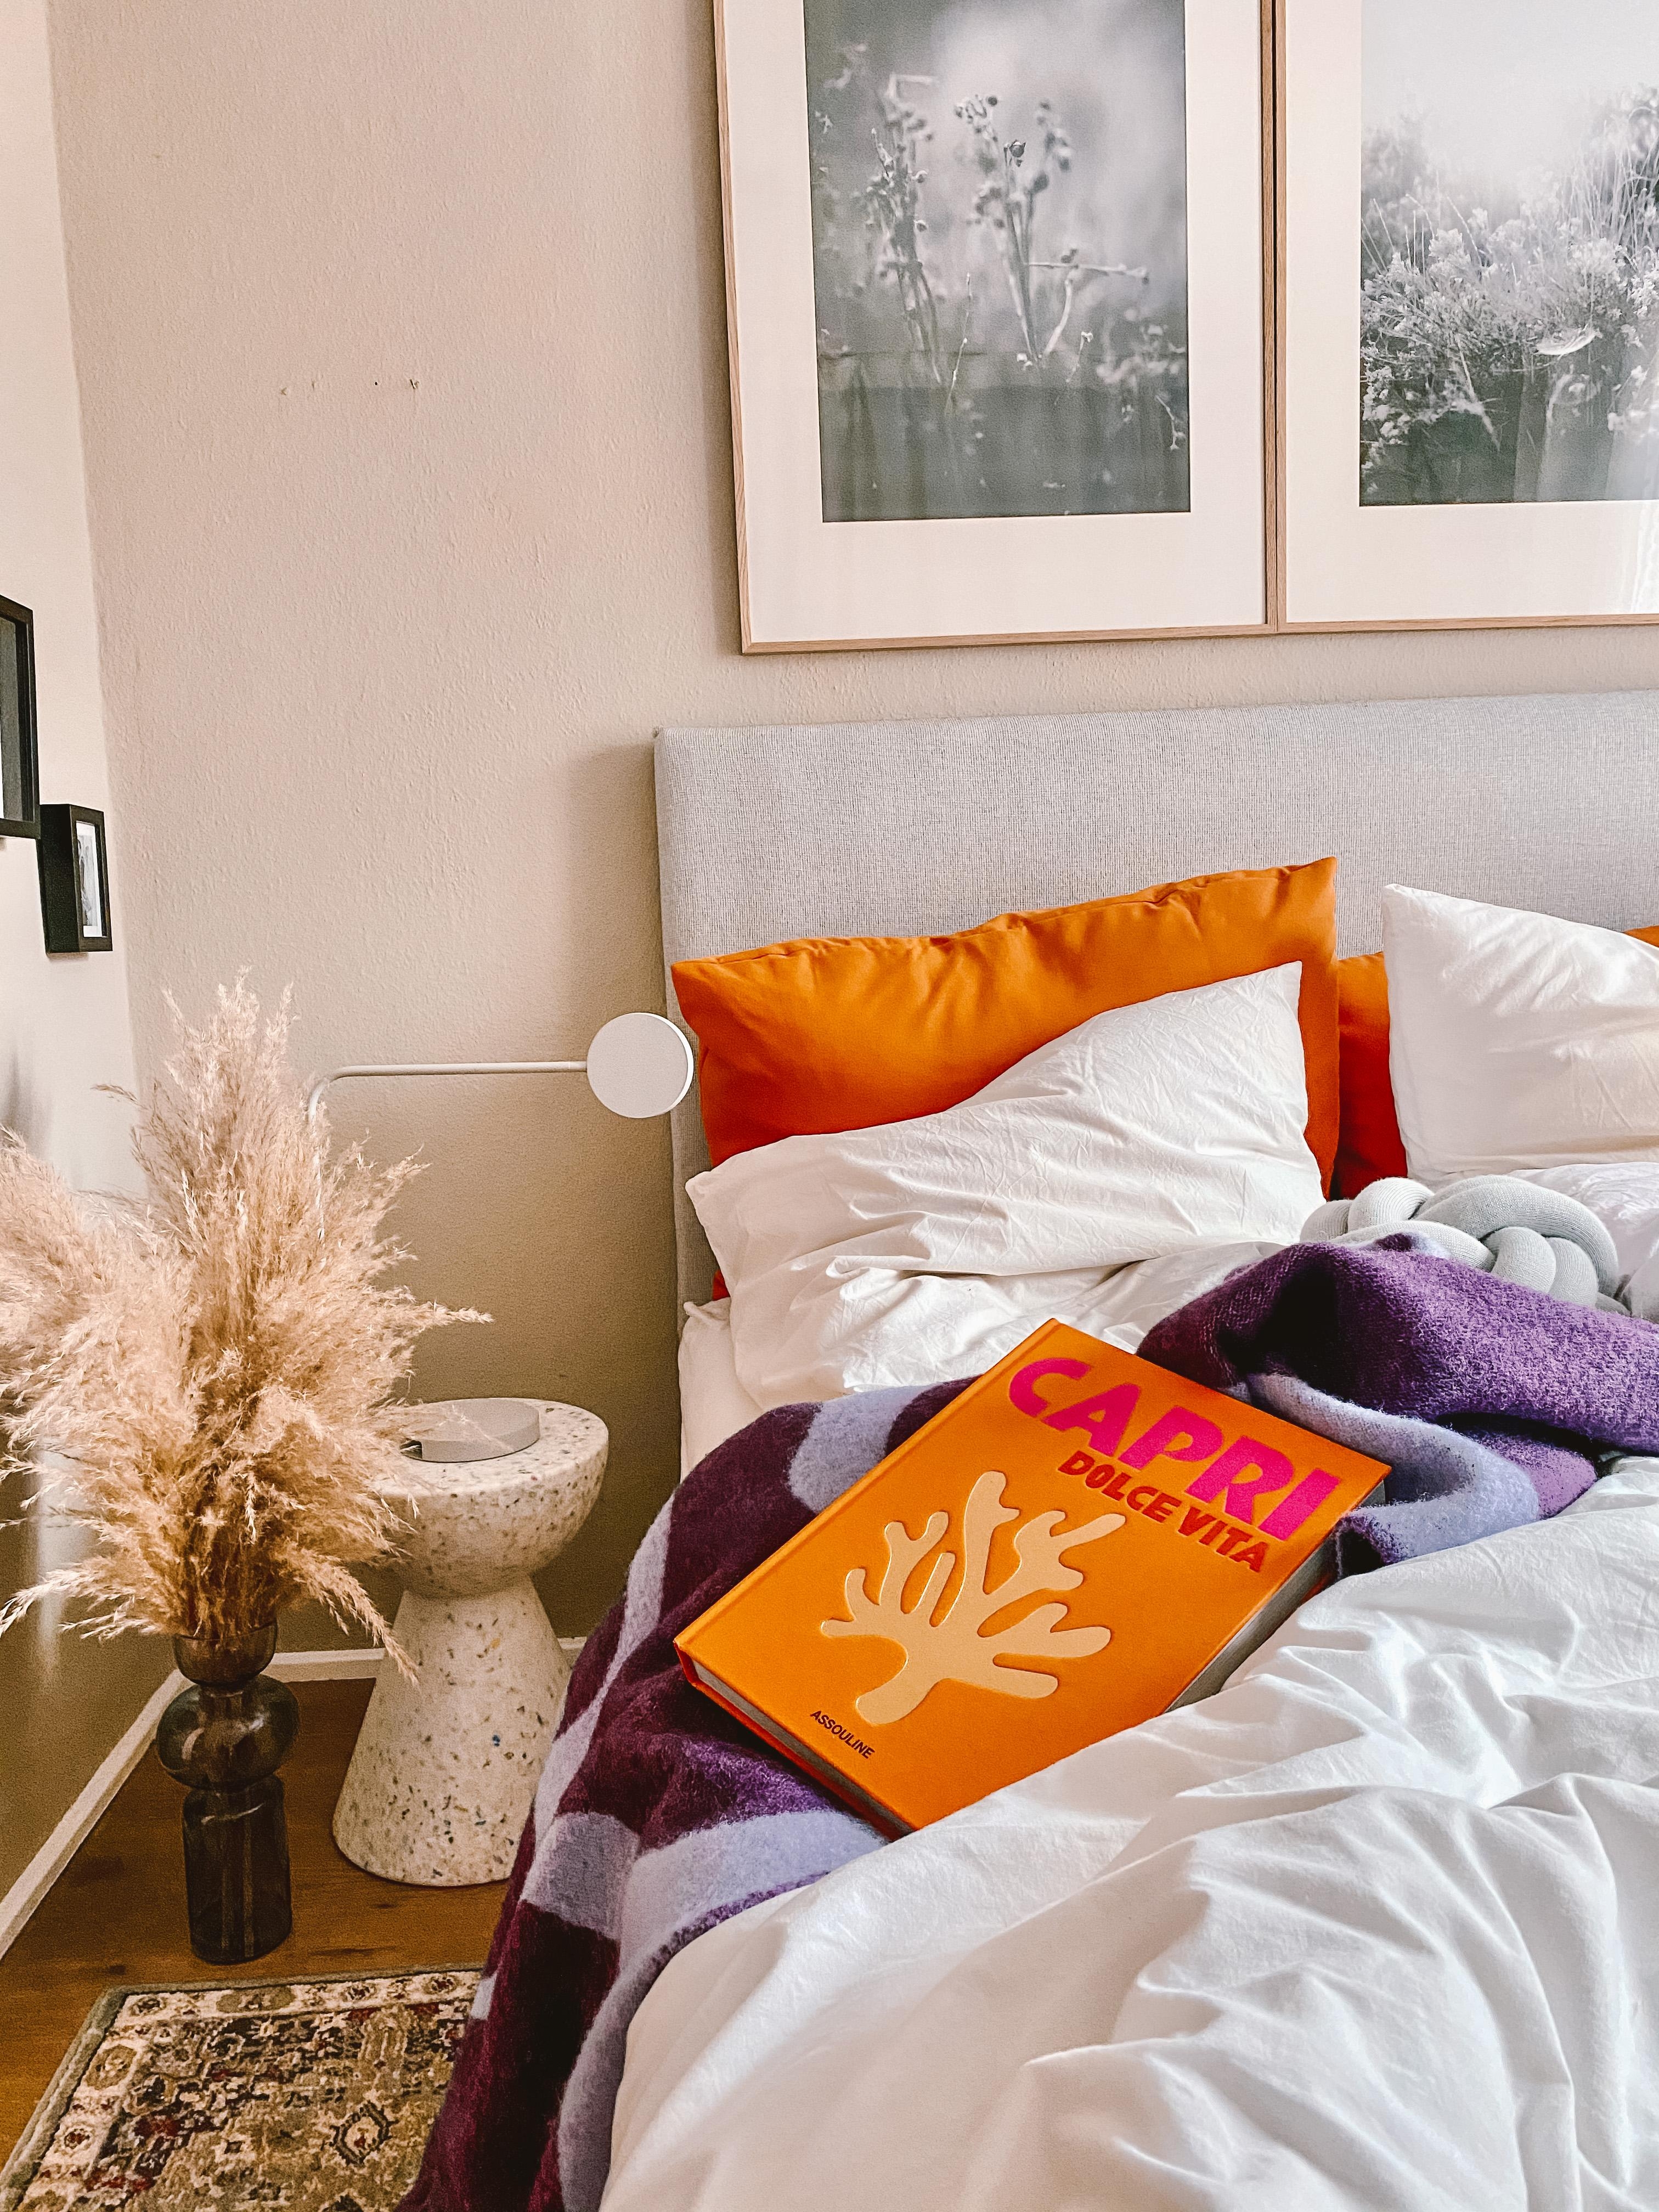 Habt einen tollen Start in die Woche! 🧡💜 #farbenfroh #bunt #orange schlafzimmer #gemütlich #farbe